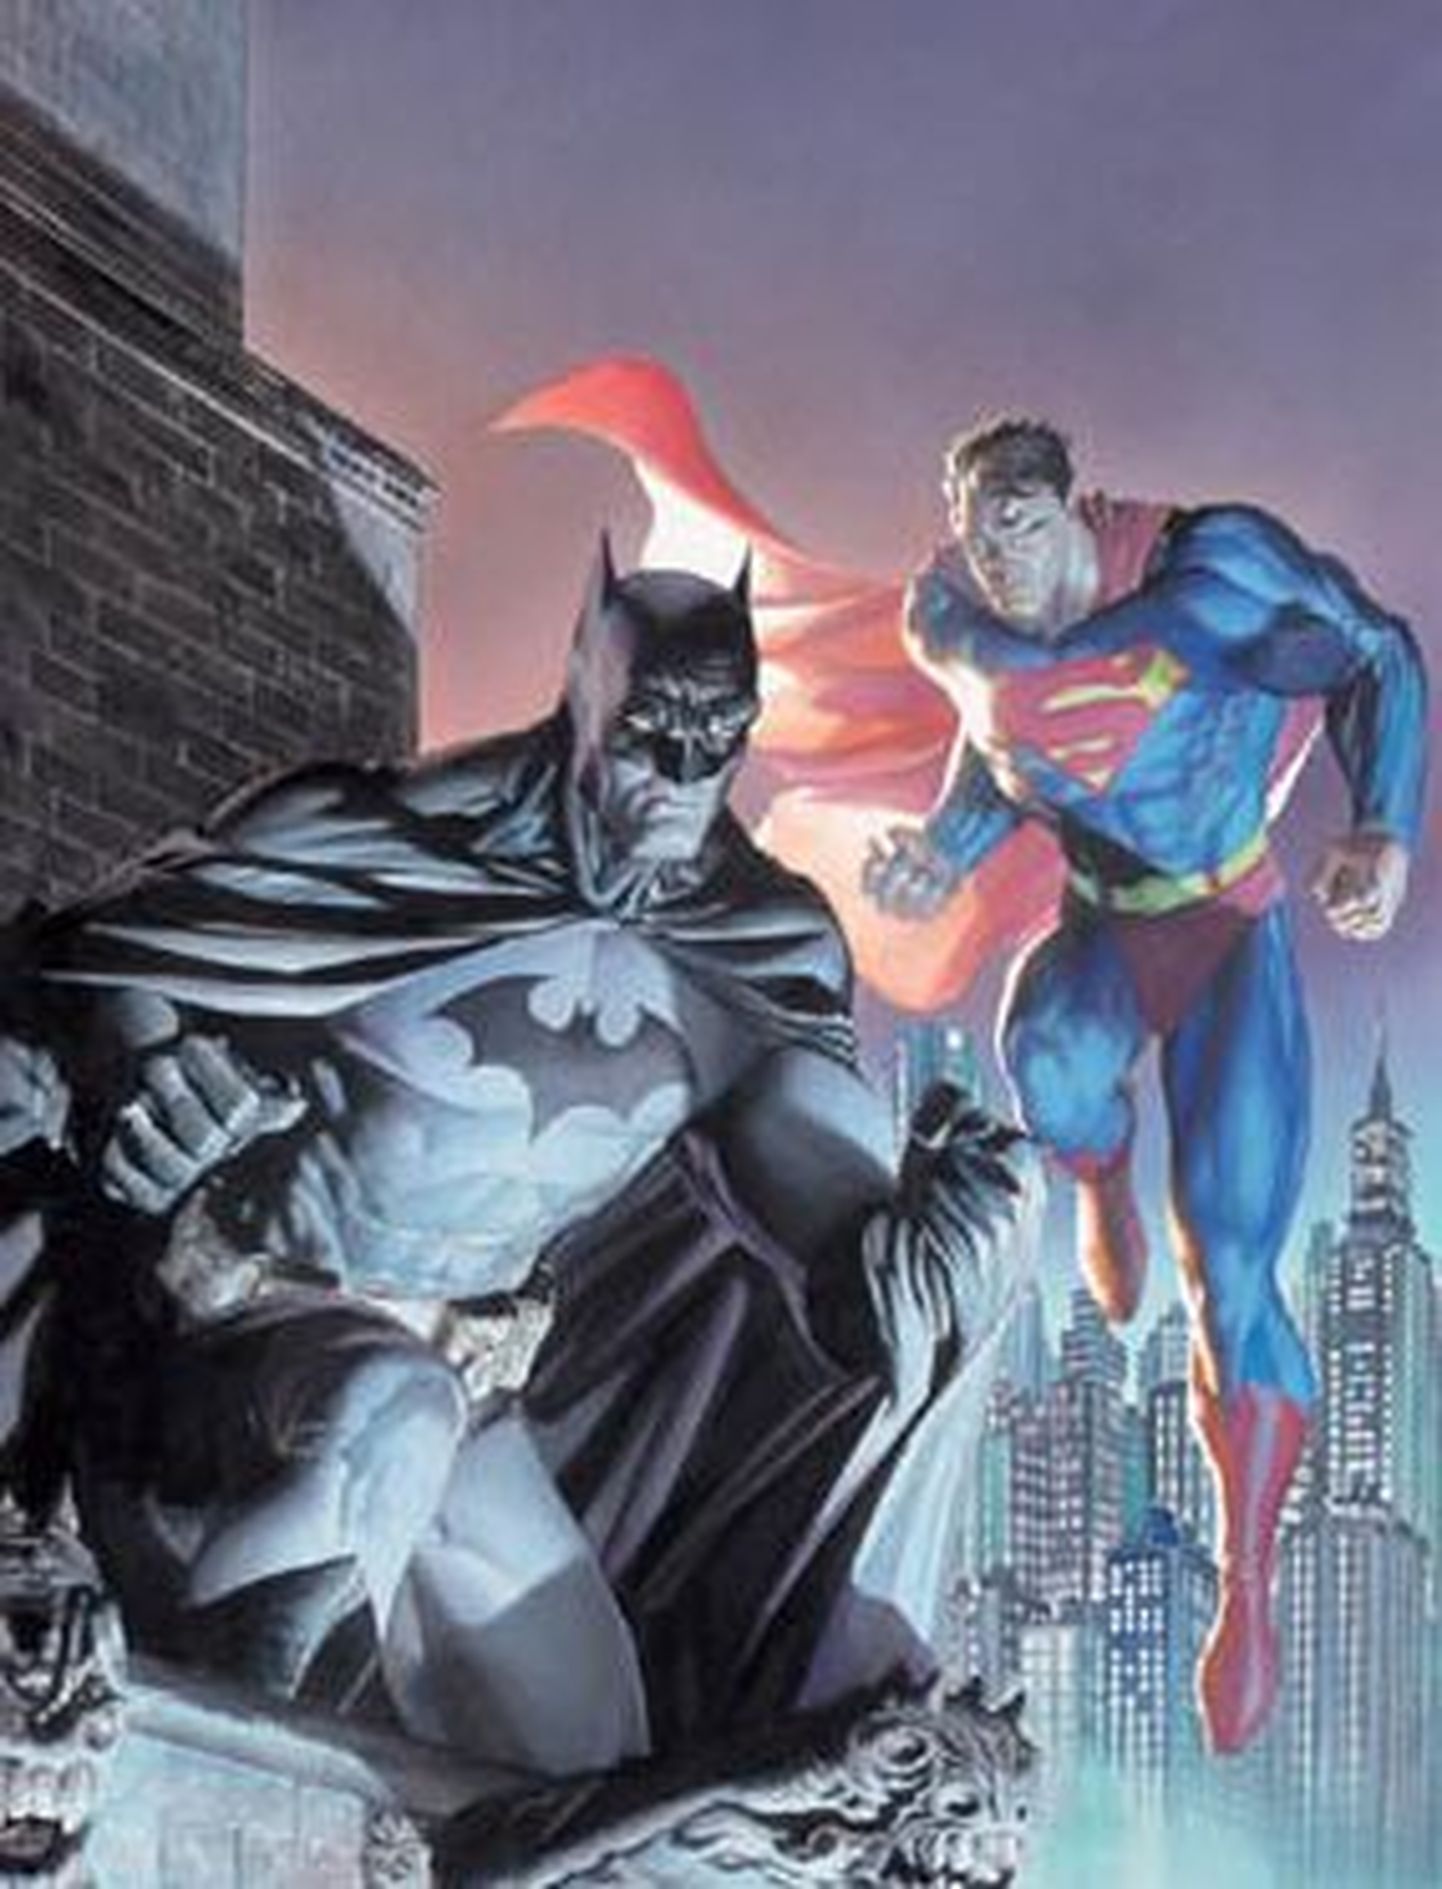 Superkangelased Batman ja Superman